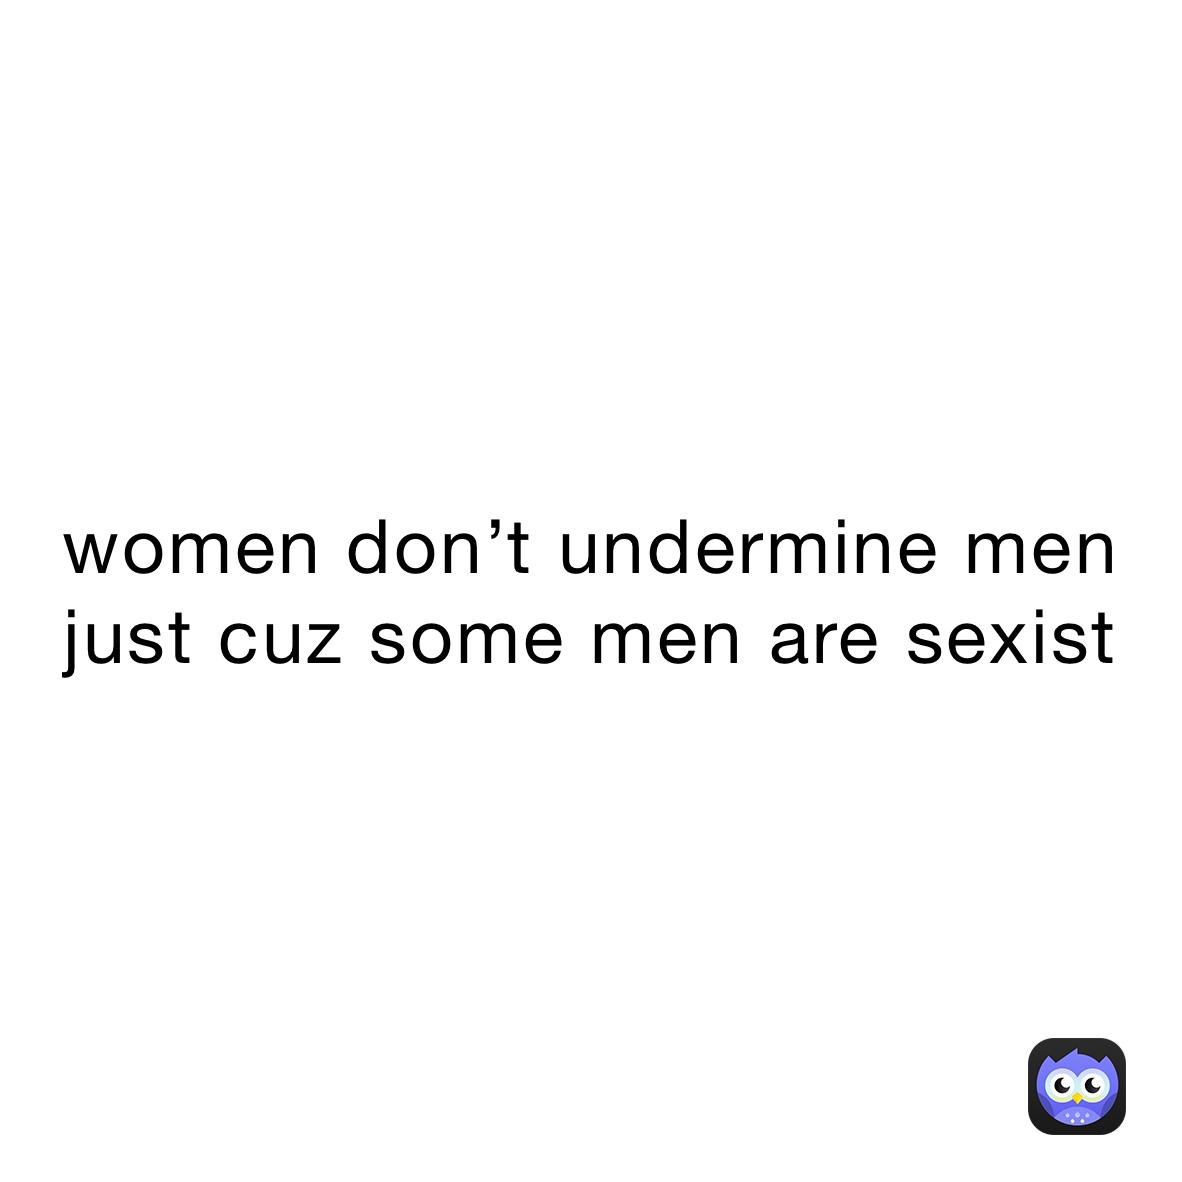 women don’t undermine men just cuz some men are sexist